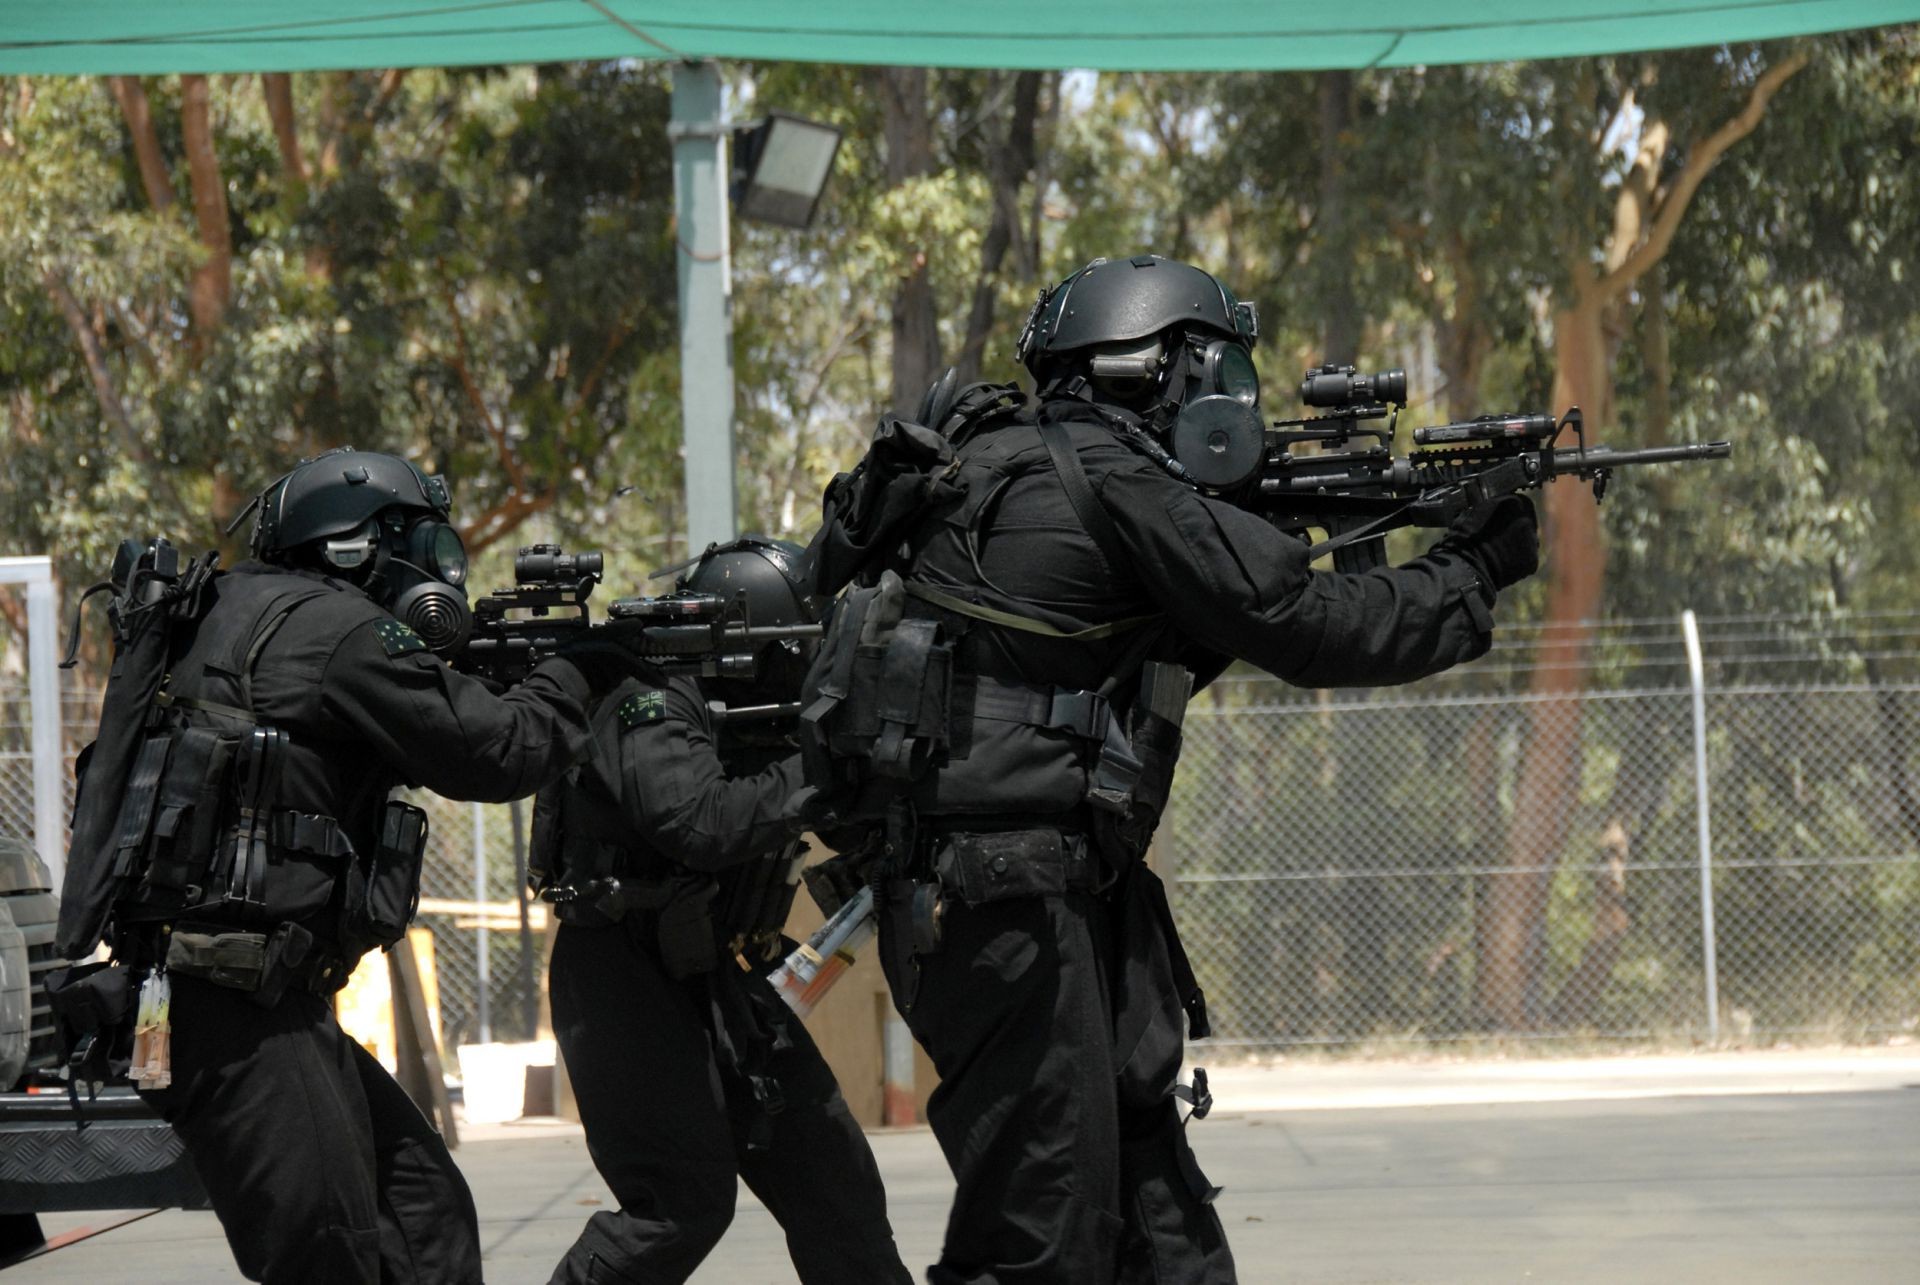 спецназ полиция преступление оружие военные пистолет армия битва силу войны безопасности солдат действие винтовка униформа